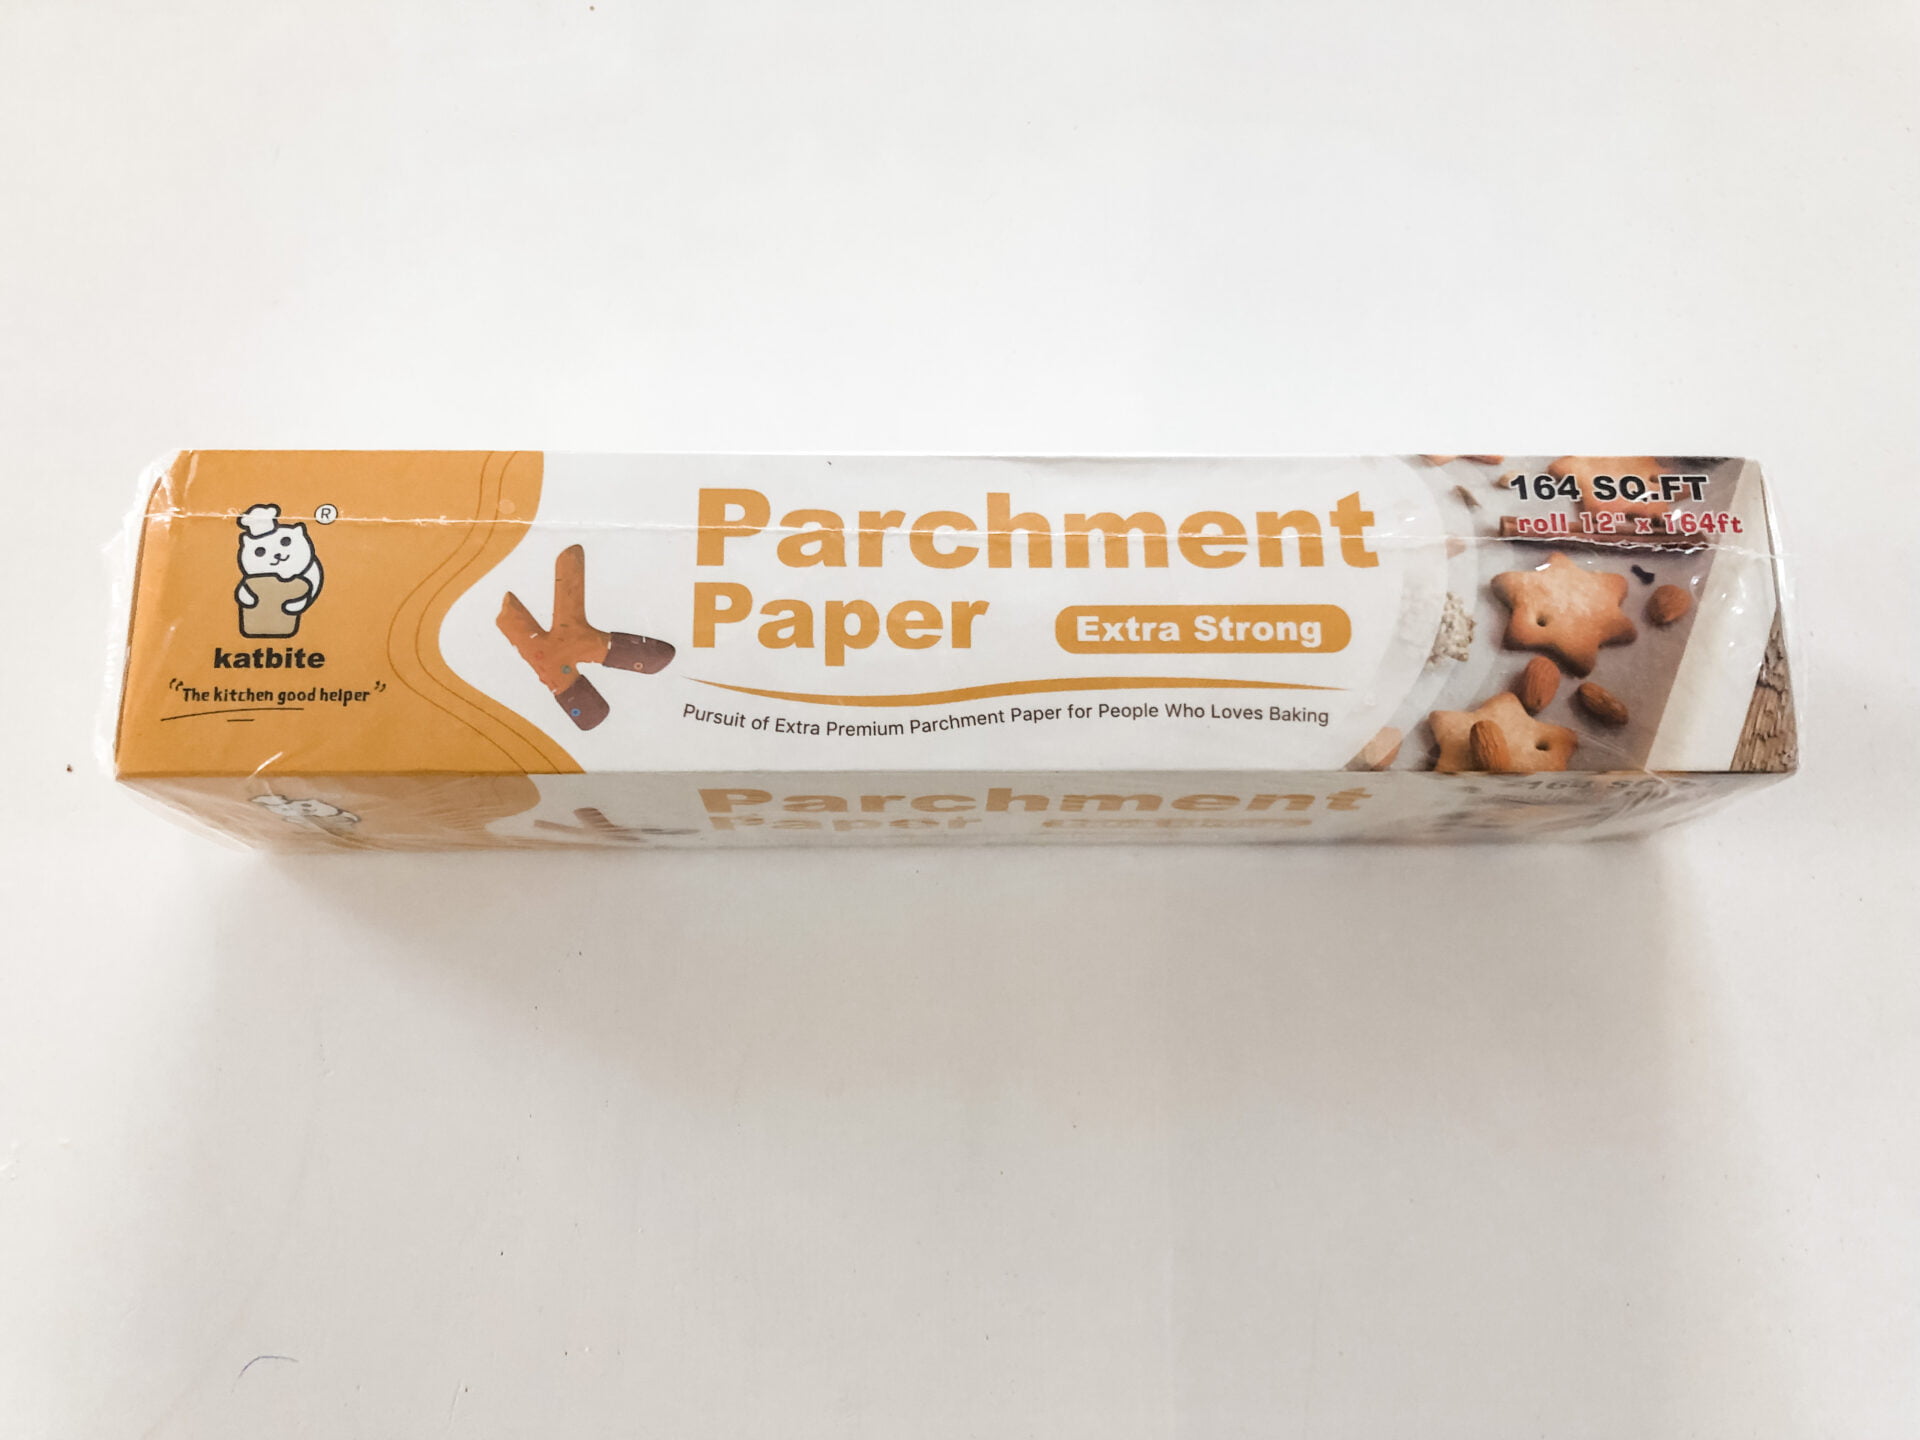 Katbite parchment baking paper